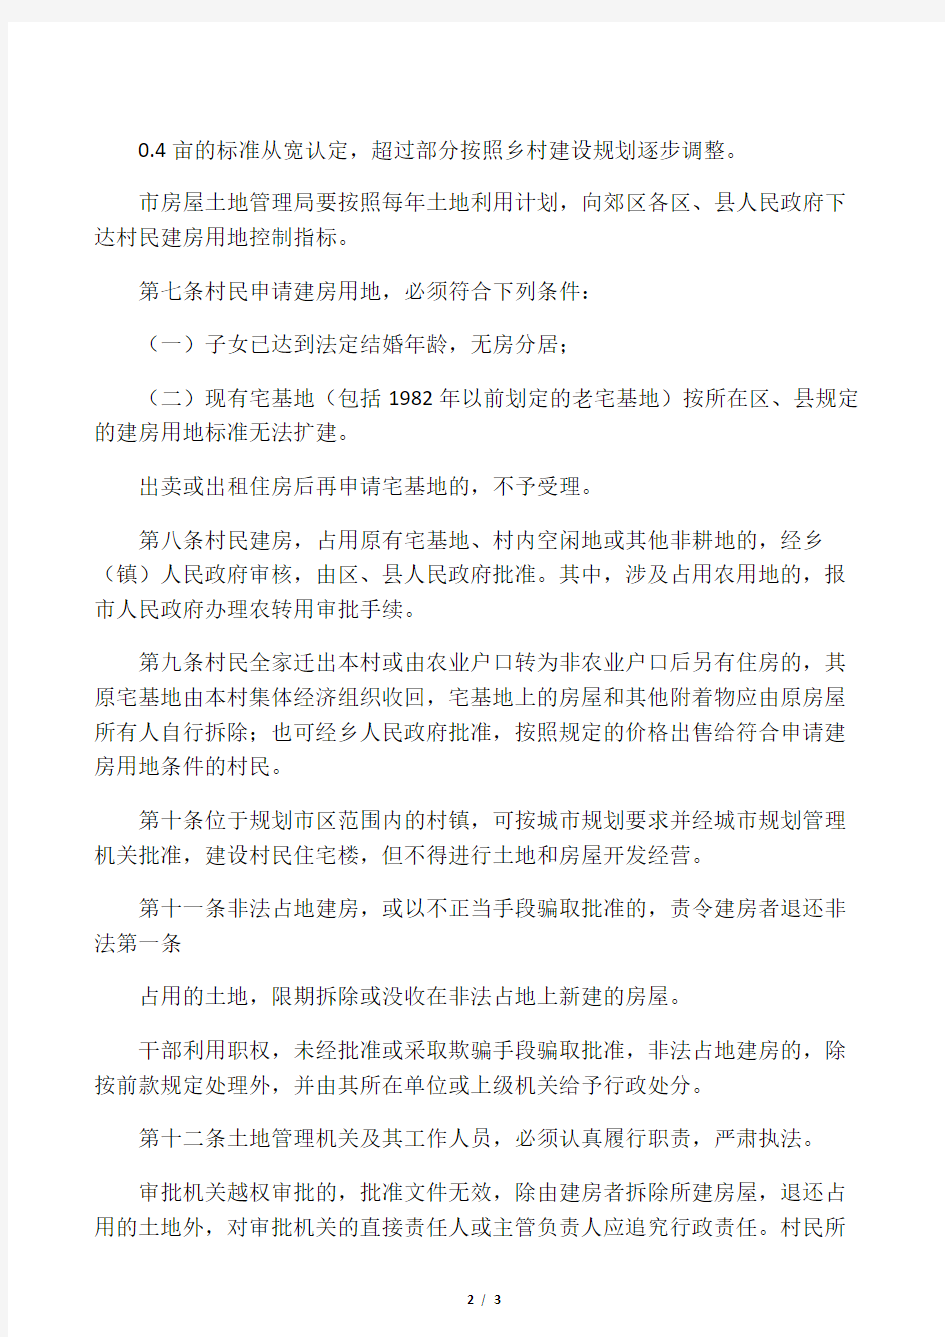 北京市人民政府关于加强农村村民建房用地管理若干规定(2007修改)